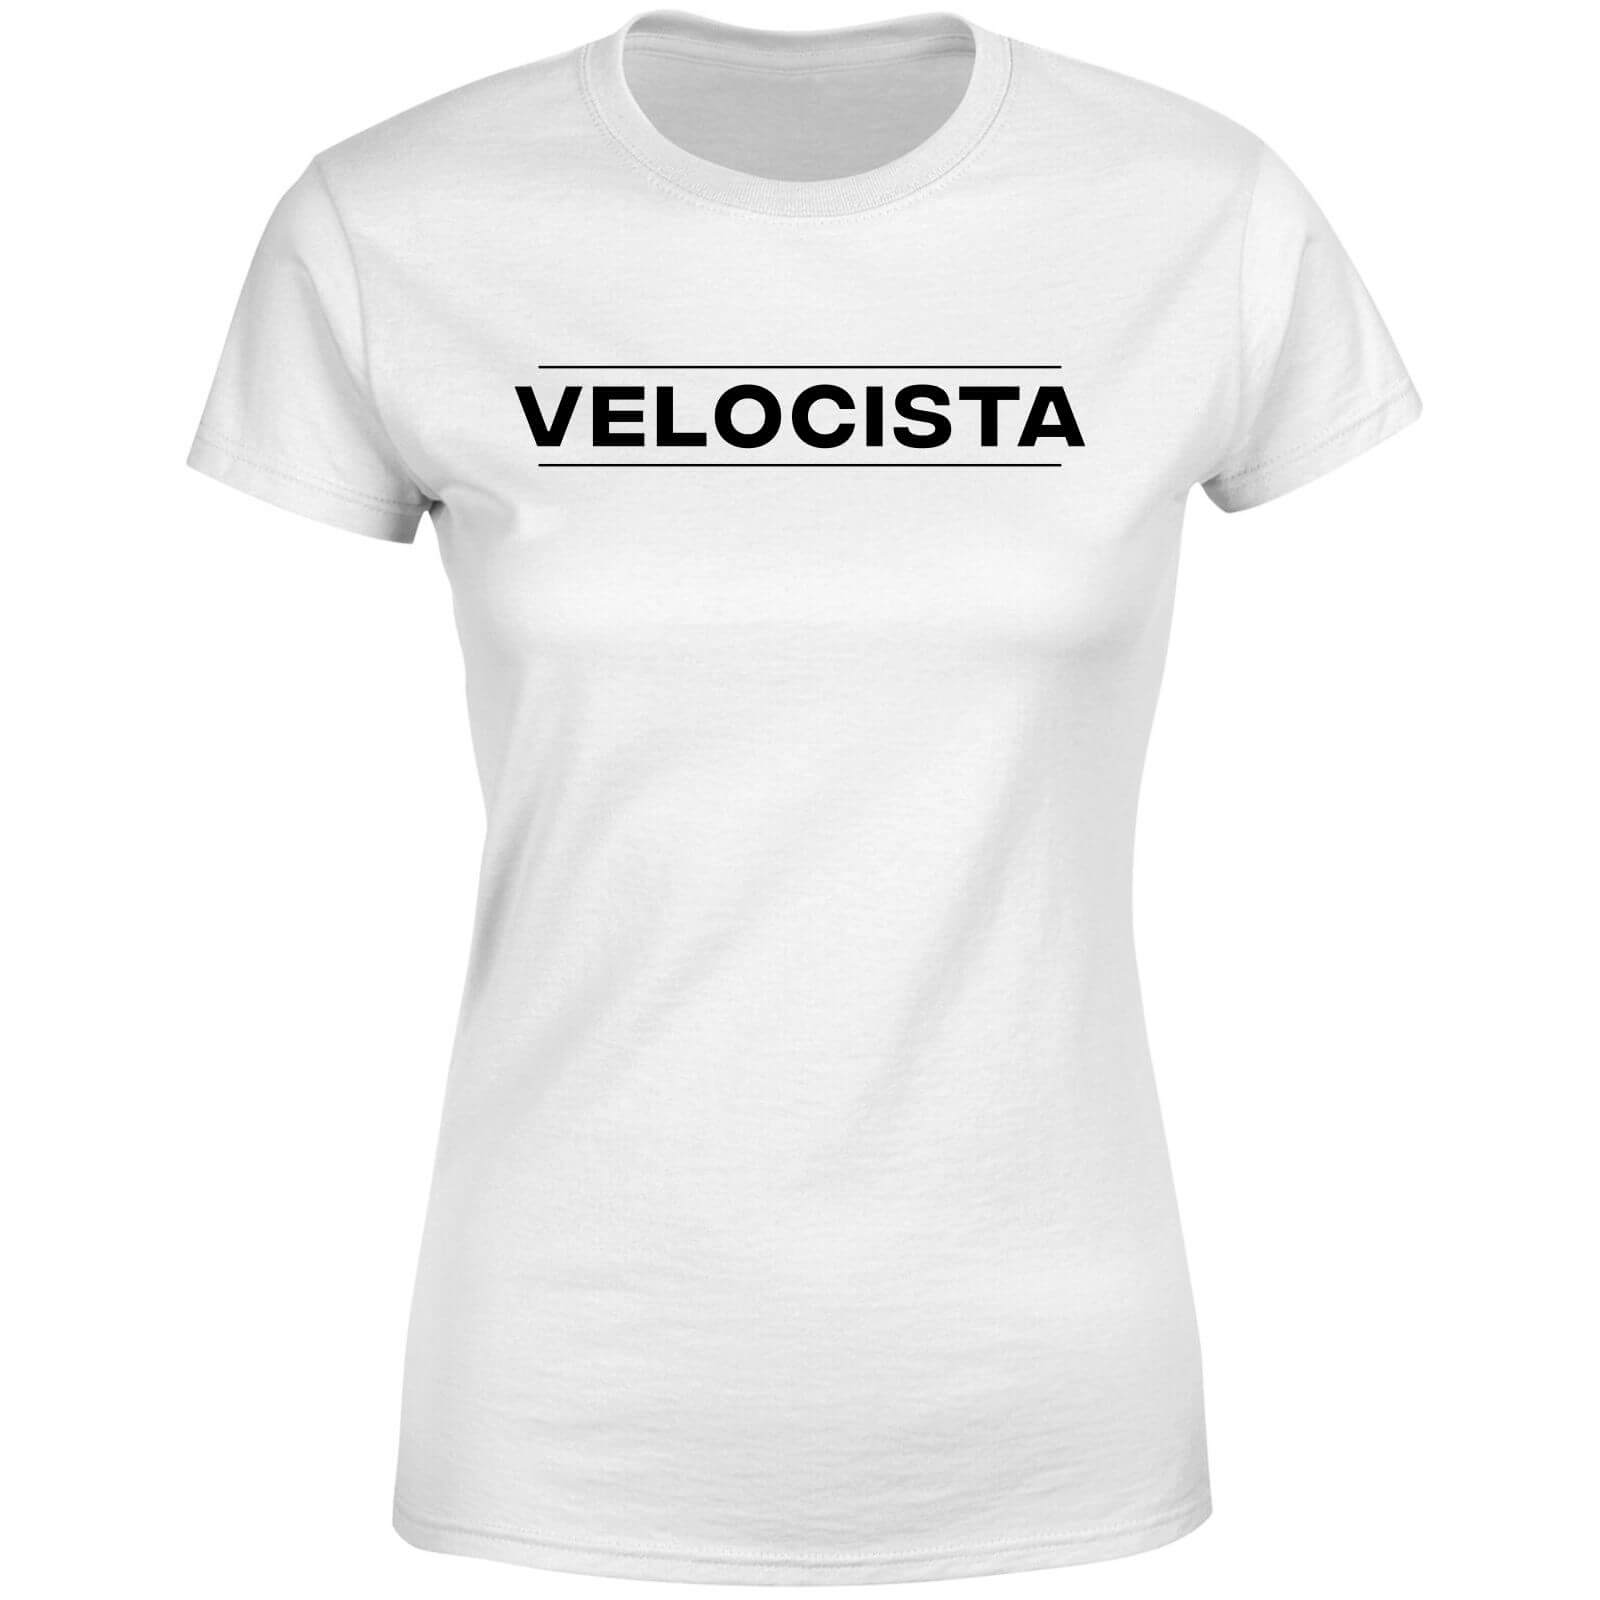 Velocista Women's T-Shirt - White - XL - White